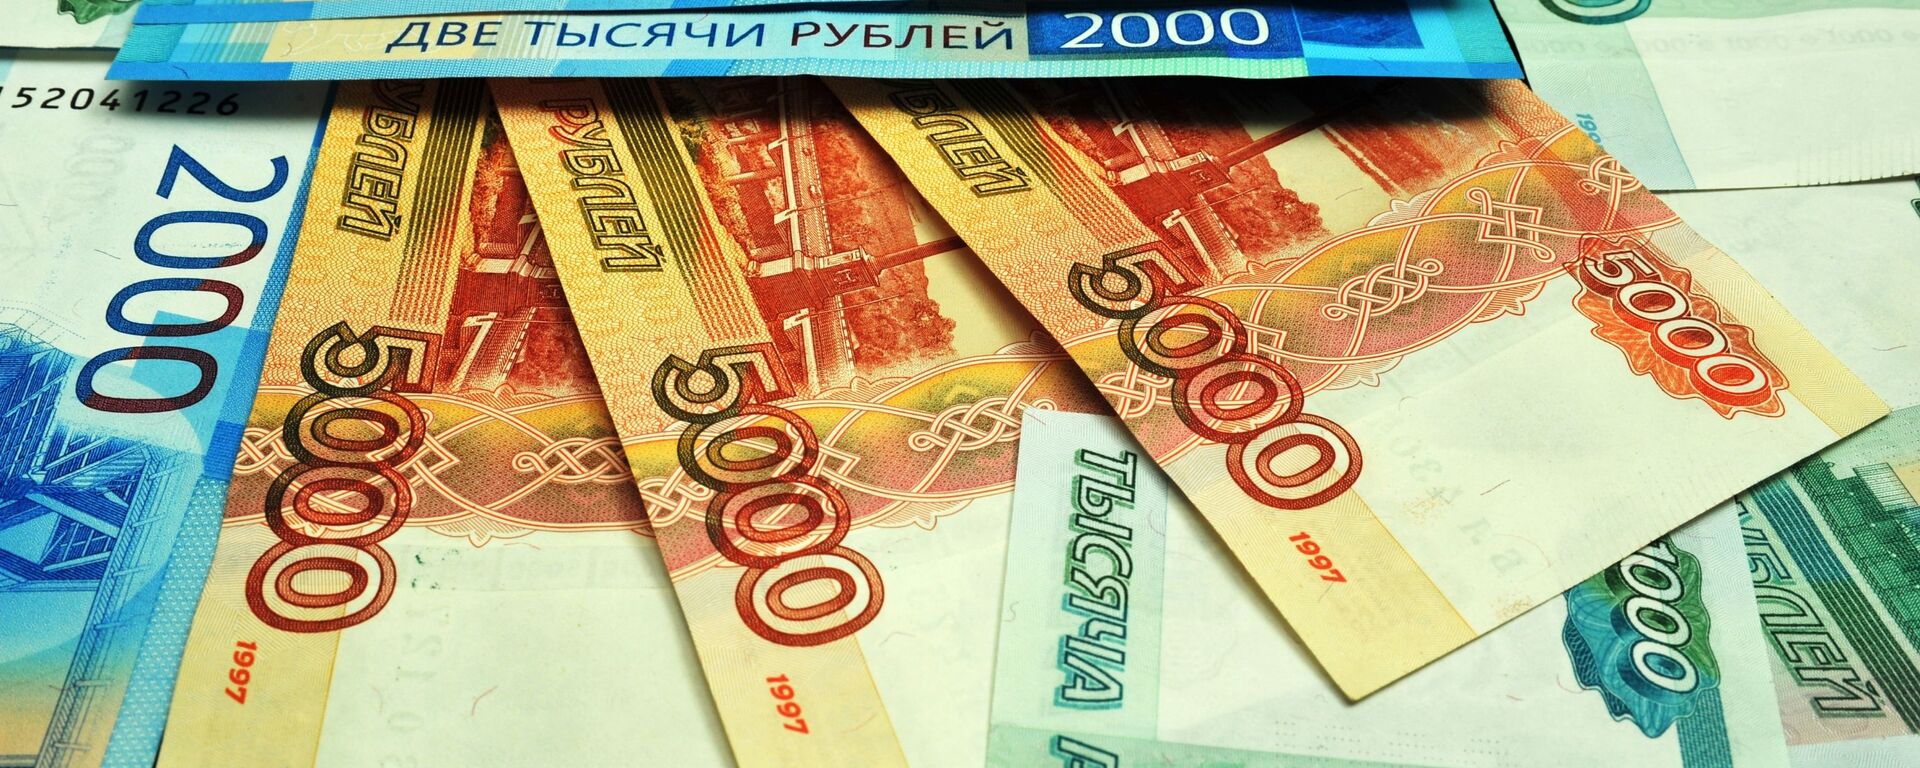 Банкноты номиналом 1000, 2000 и 5000 рублей. - Sputnik Абхазия, 1920, 27.02.2022